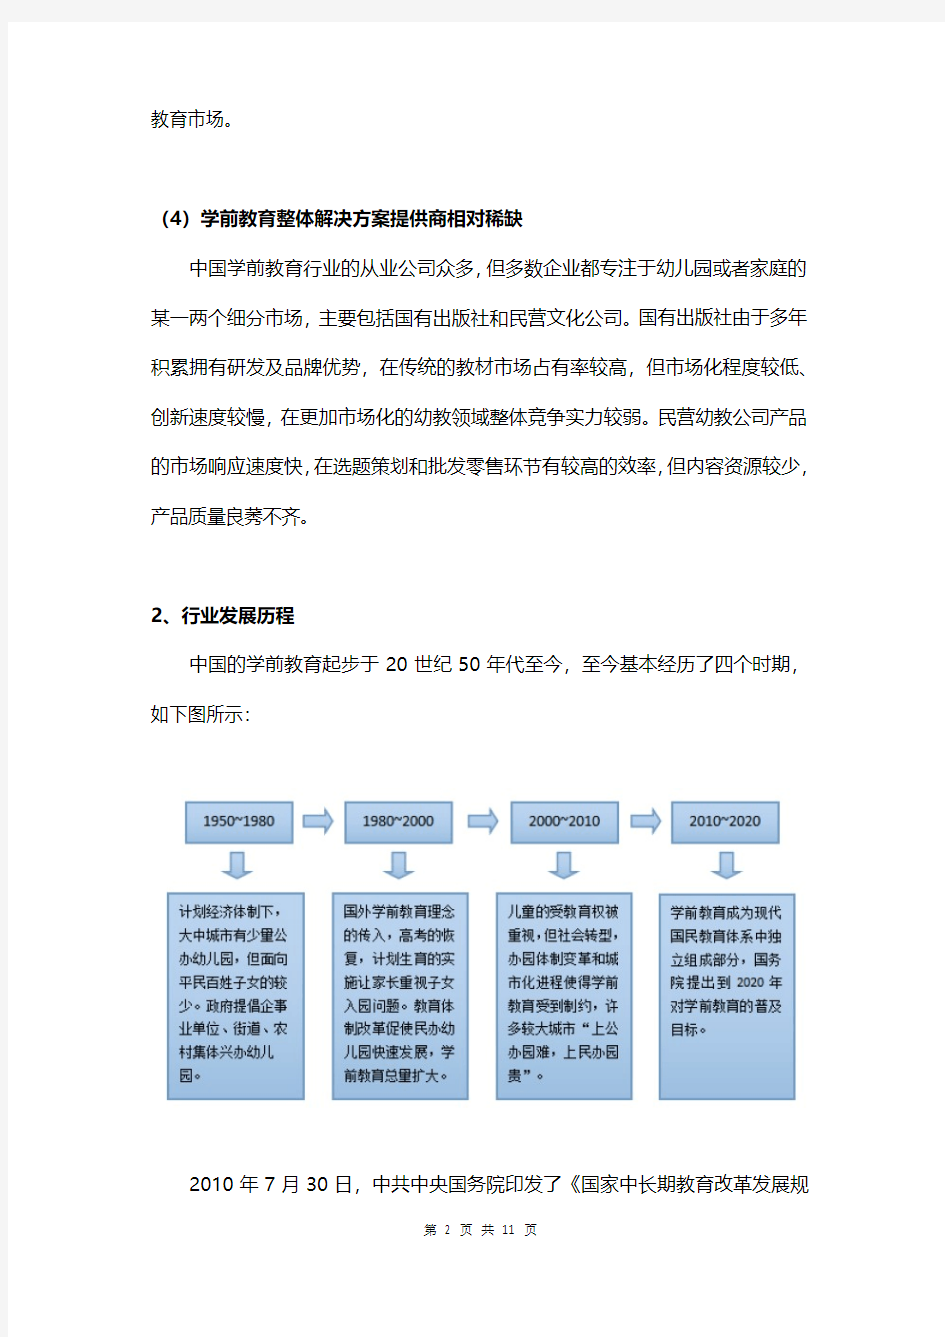 中国学前教育行业概况总结